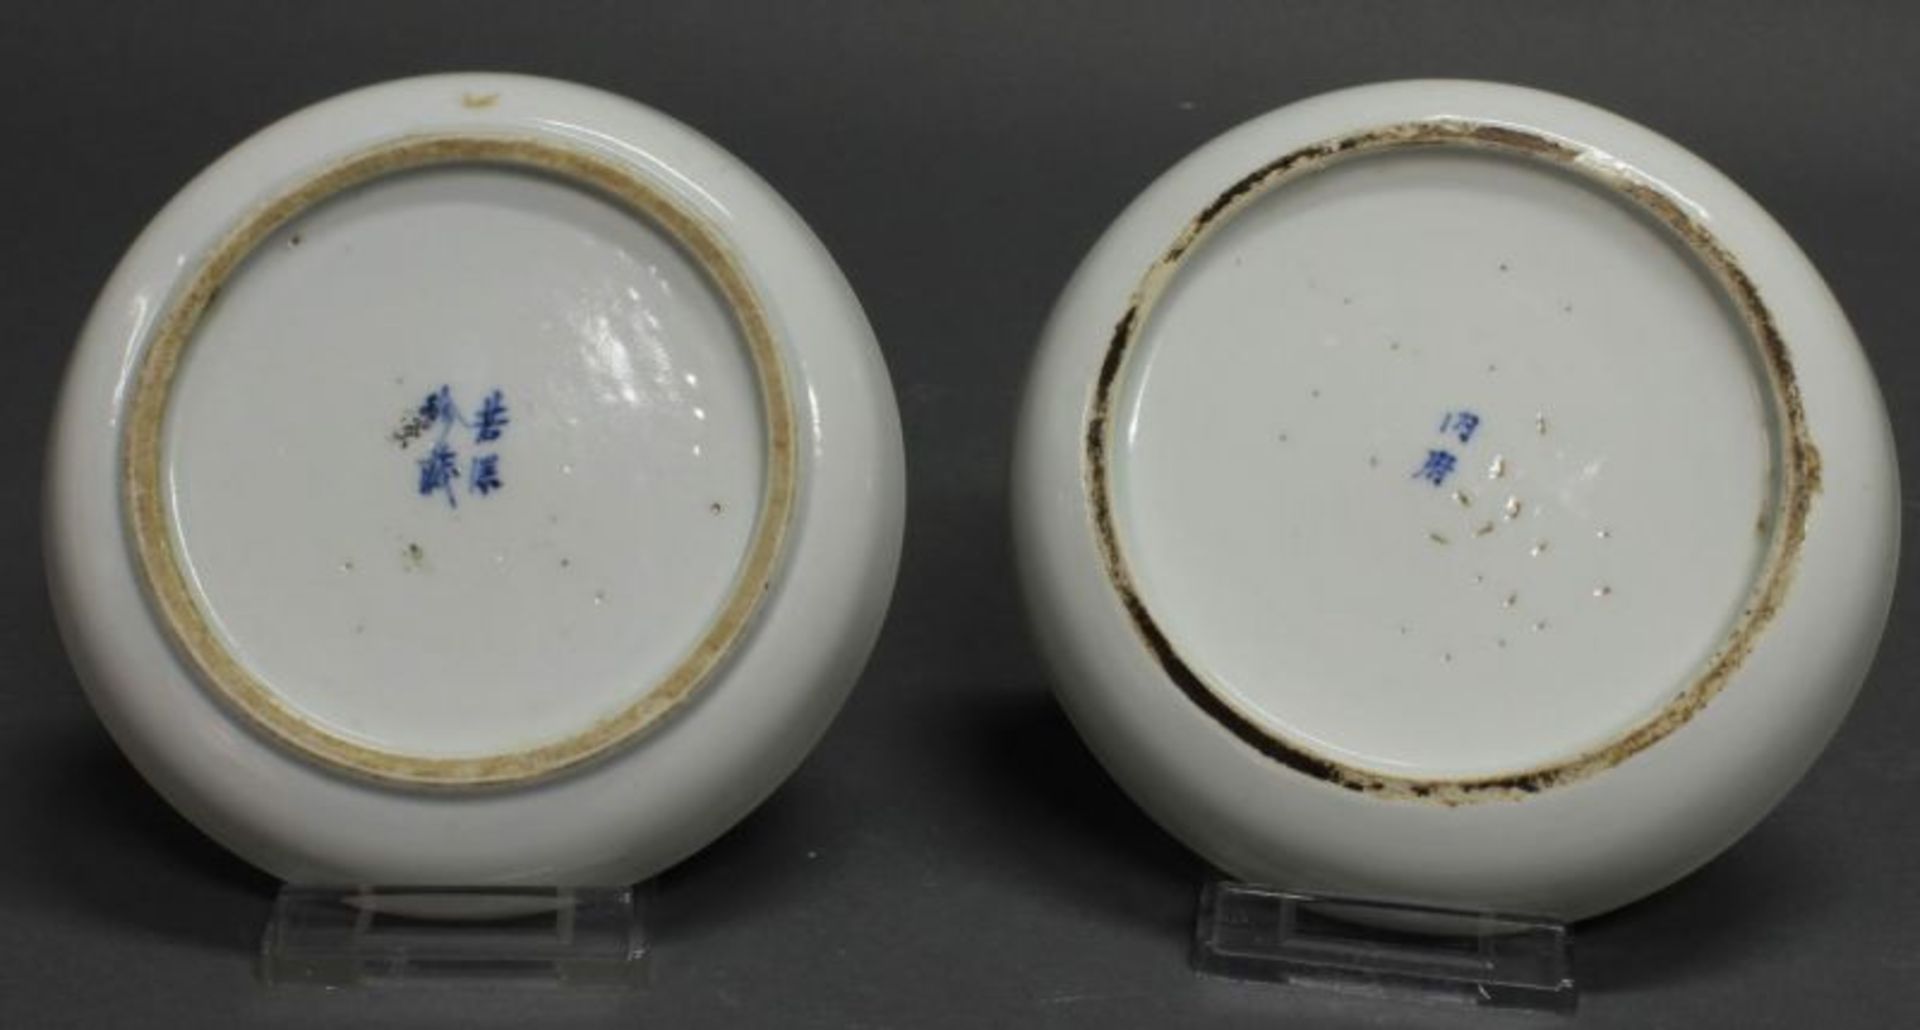 2 Teller, China, 19. Jh., Porzellan, Blau-Weiß-Dekor, Angler unter Kiefern, Gedichtaufschrift, - Image 2 of 2